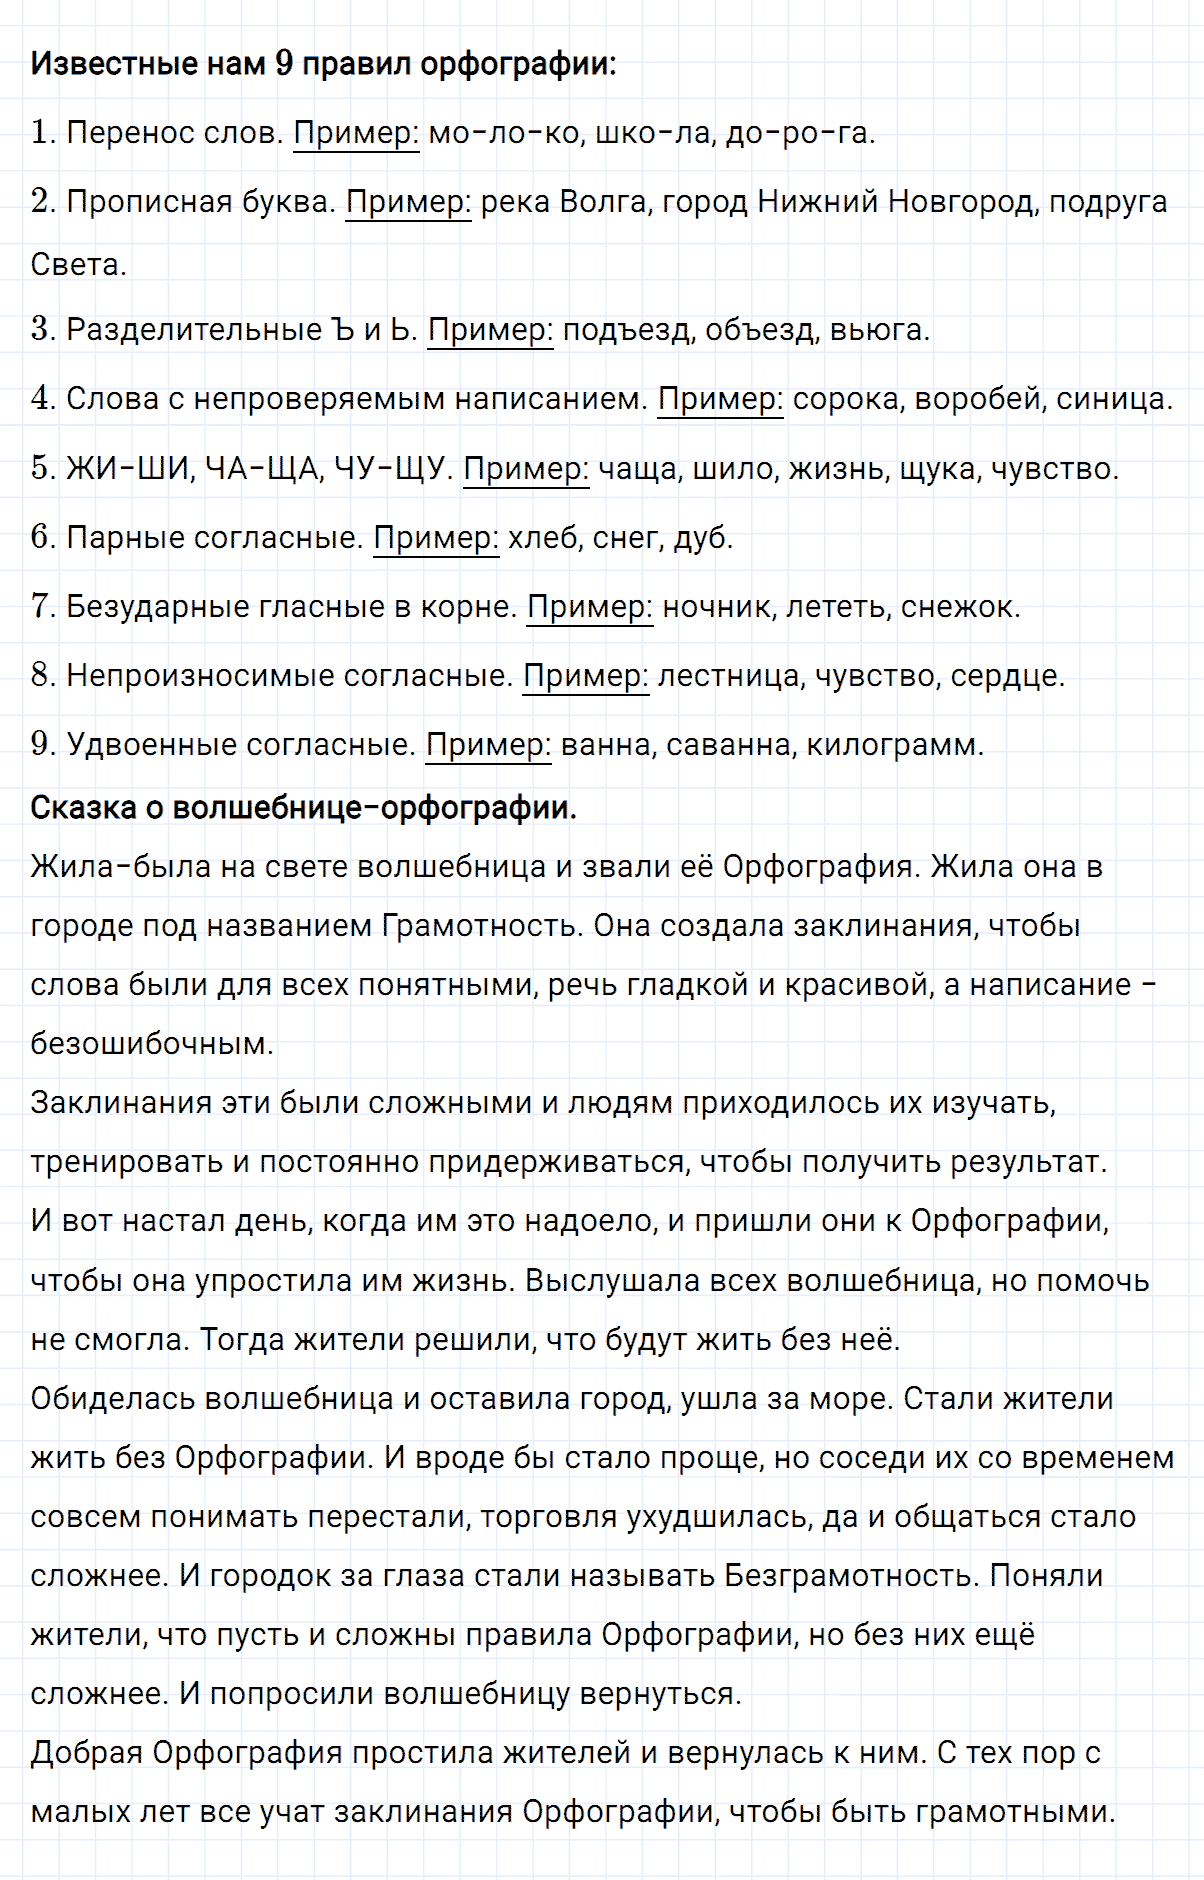 гдз 4 класс номер 68 русский язык Климанова, Бабушкина часть 1